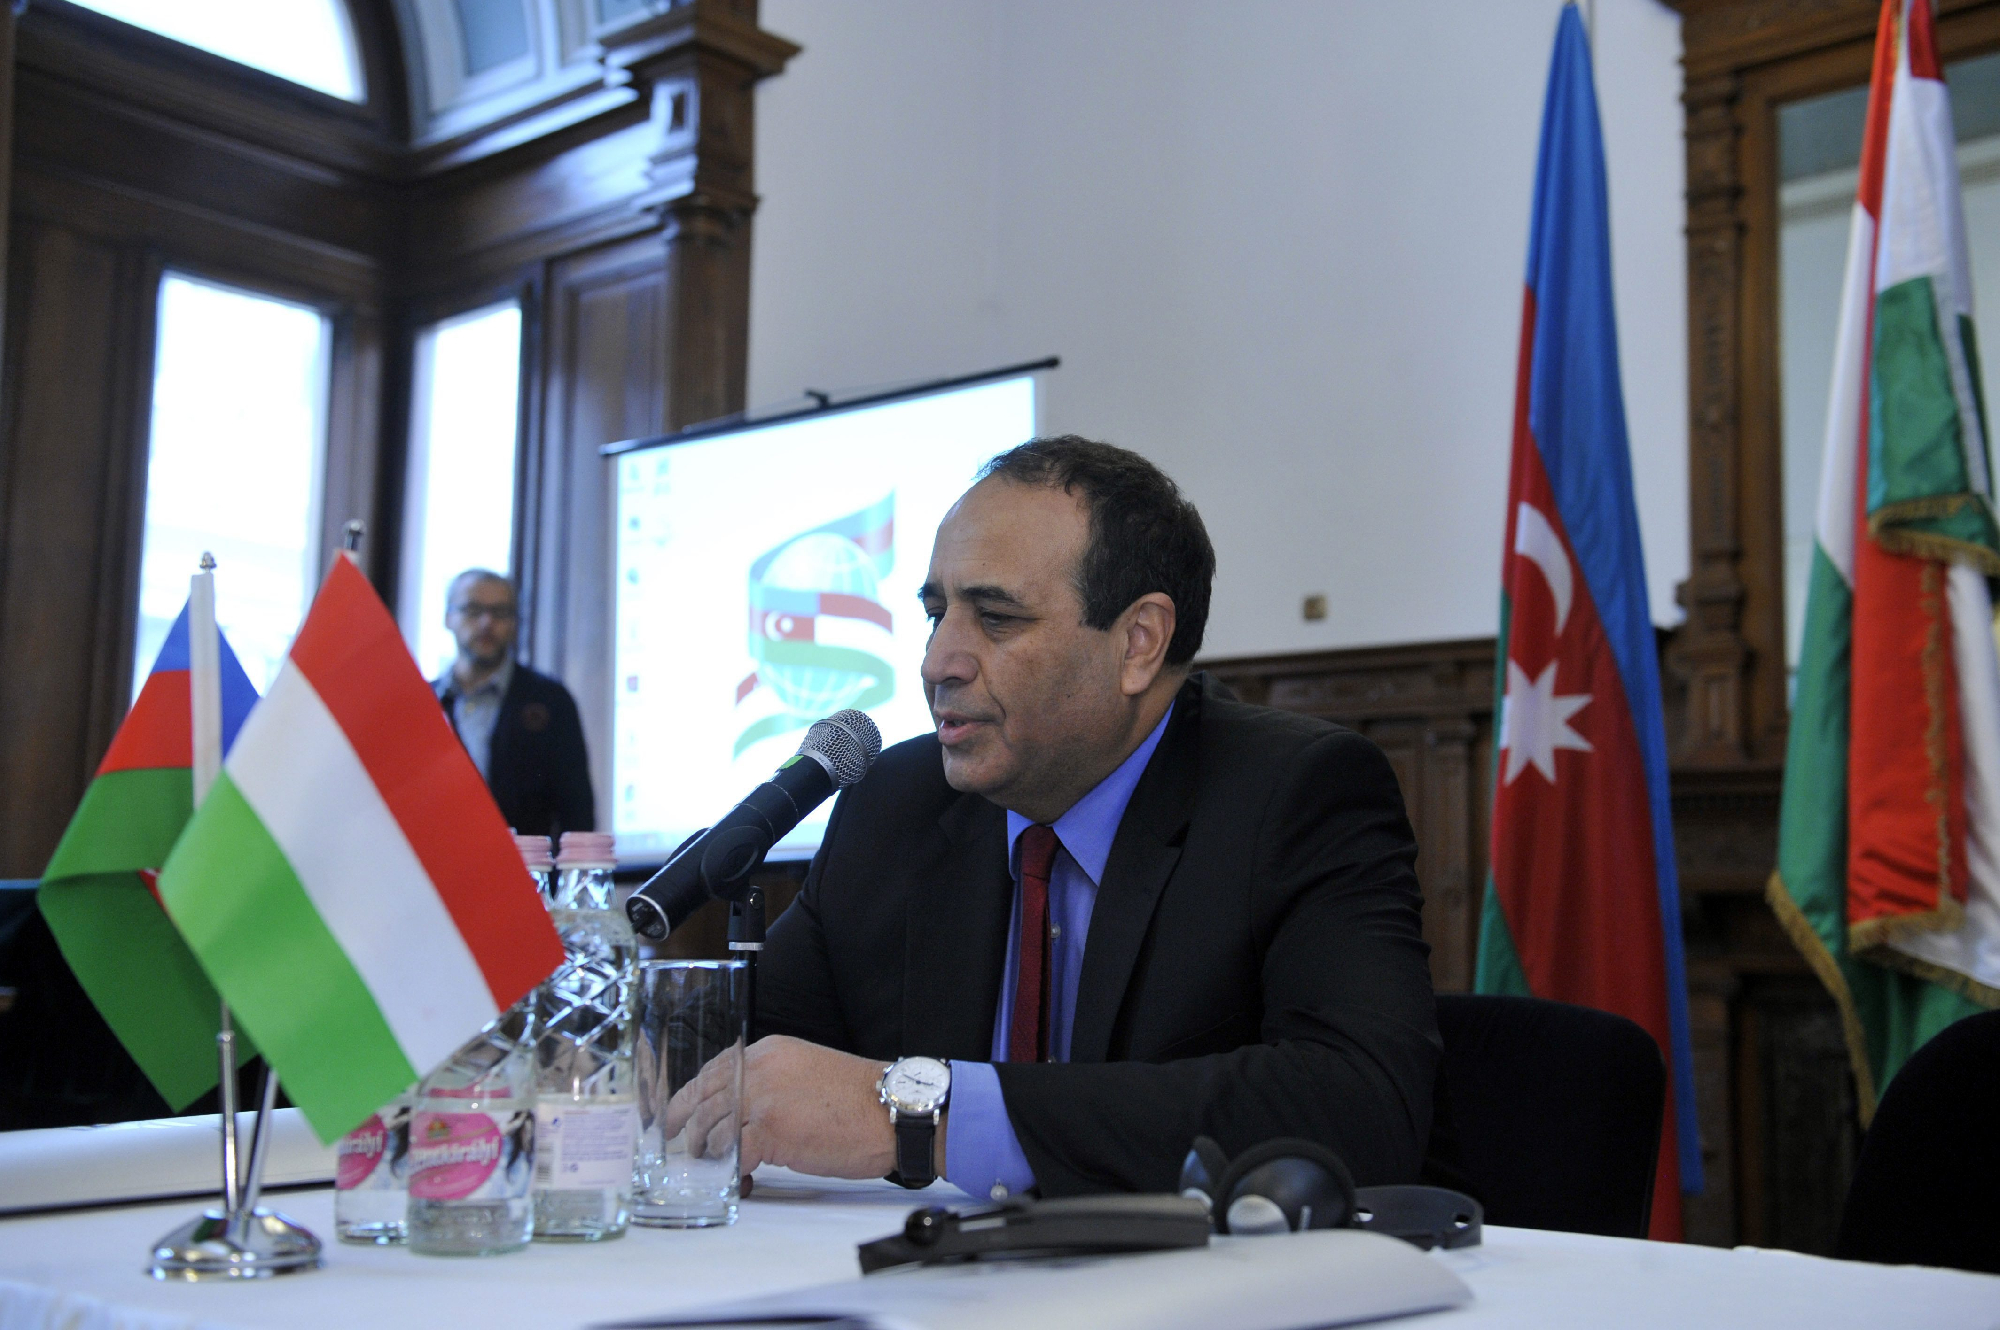 Magyar kitüntetést kapott a baltás gyilkos kapcsán ismertté vált azeri nagykövet